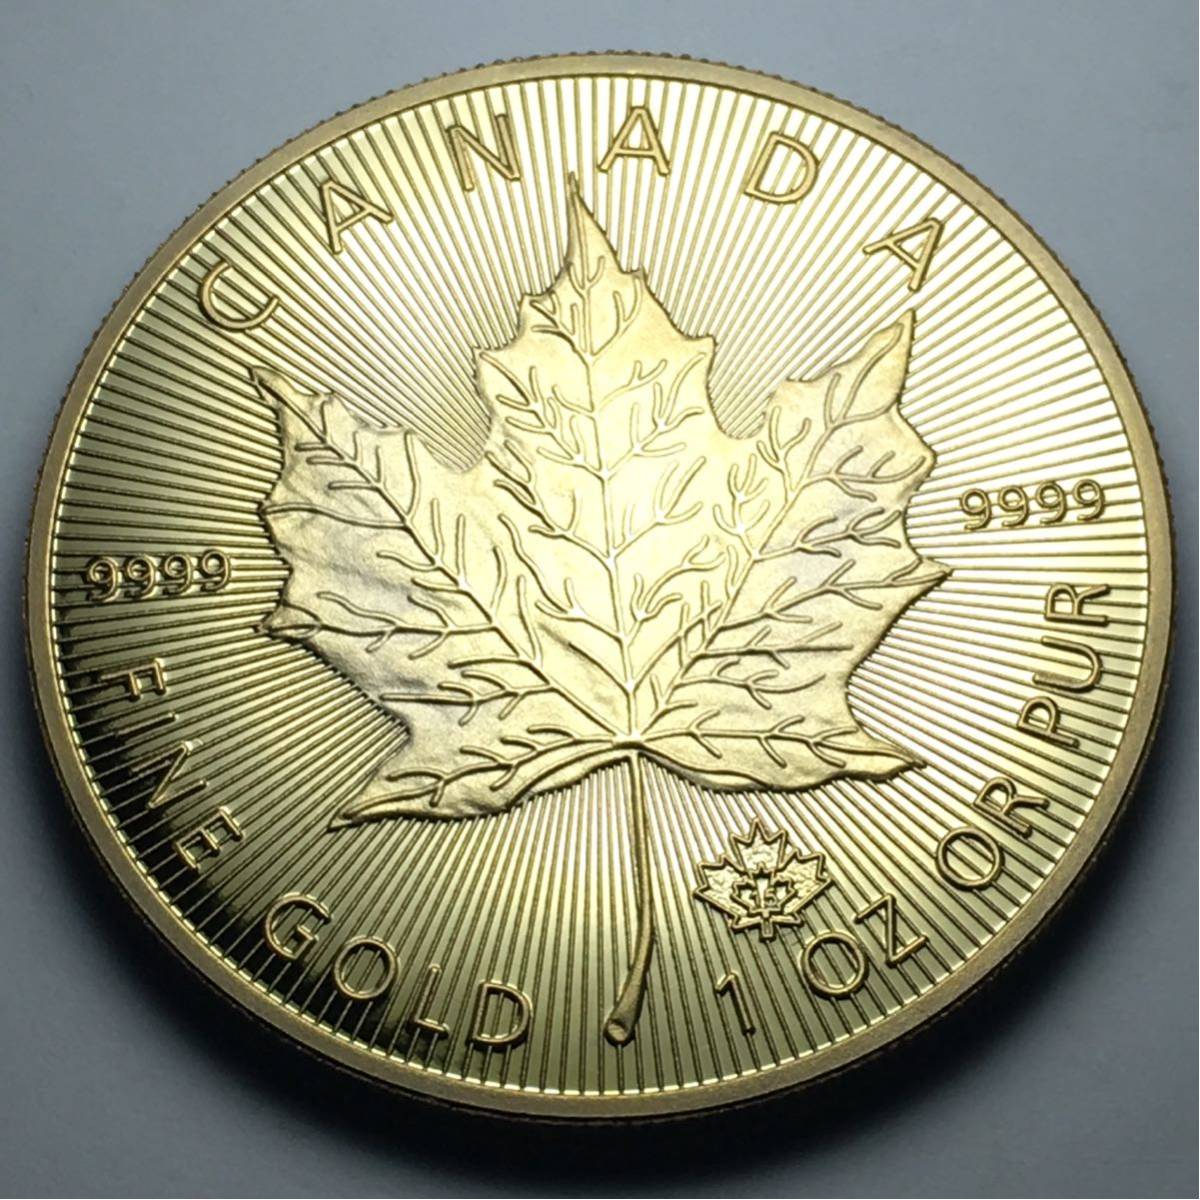  原文:カナダ メイプルリーフ金貨 1oz 1オンス 2コイン 2015年 コレクション メダル 約29グラム 管理番号gc001